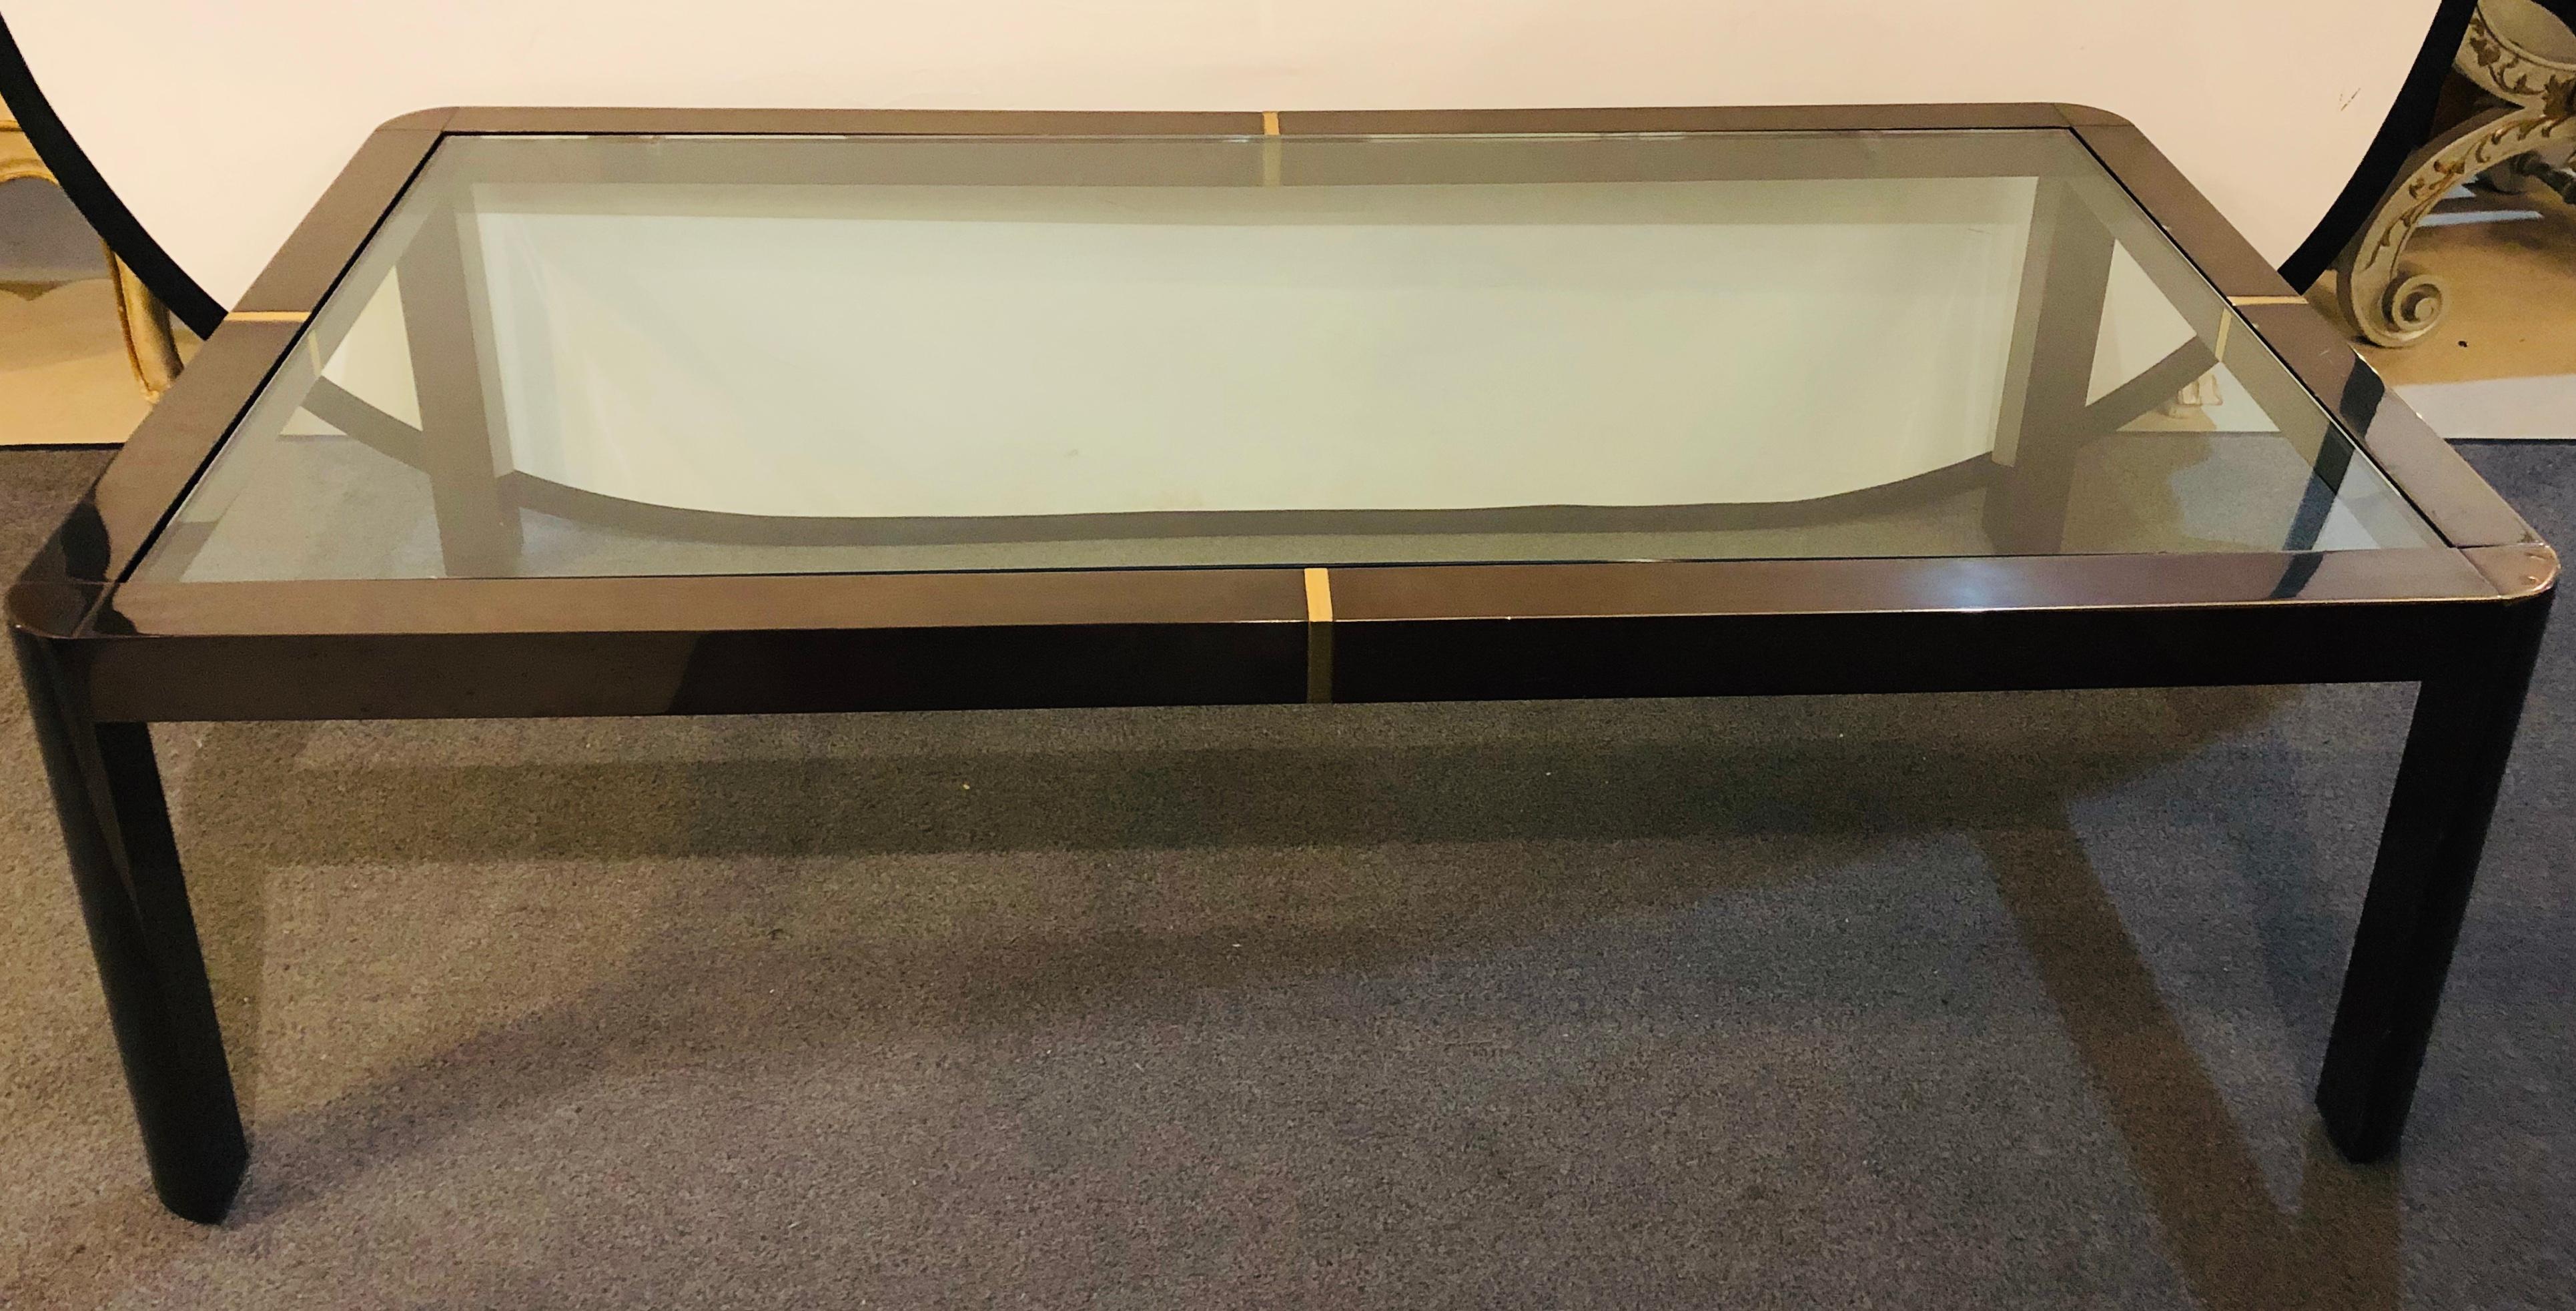 Une table basse/café moderne. Laiton, métal et verre. Cette belle table basse en métal de style Hollywood Regency a des supports en verre cachés sur un cadre en laiton et en métal.

  